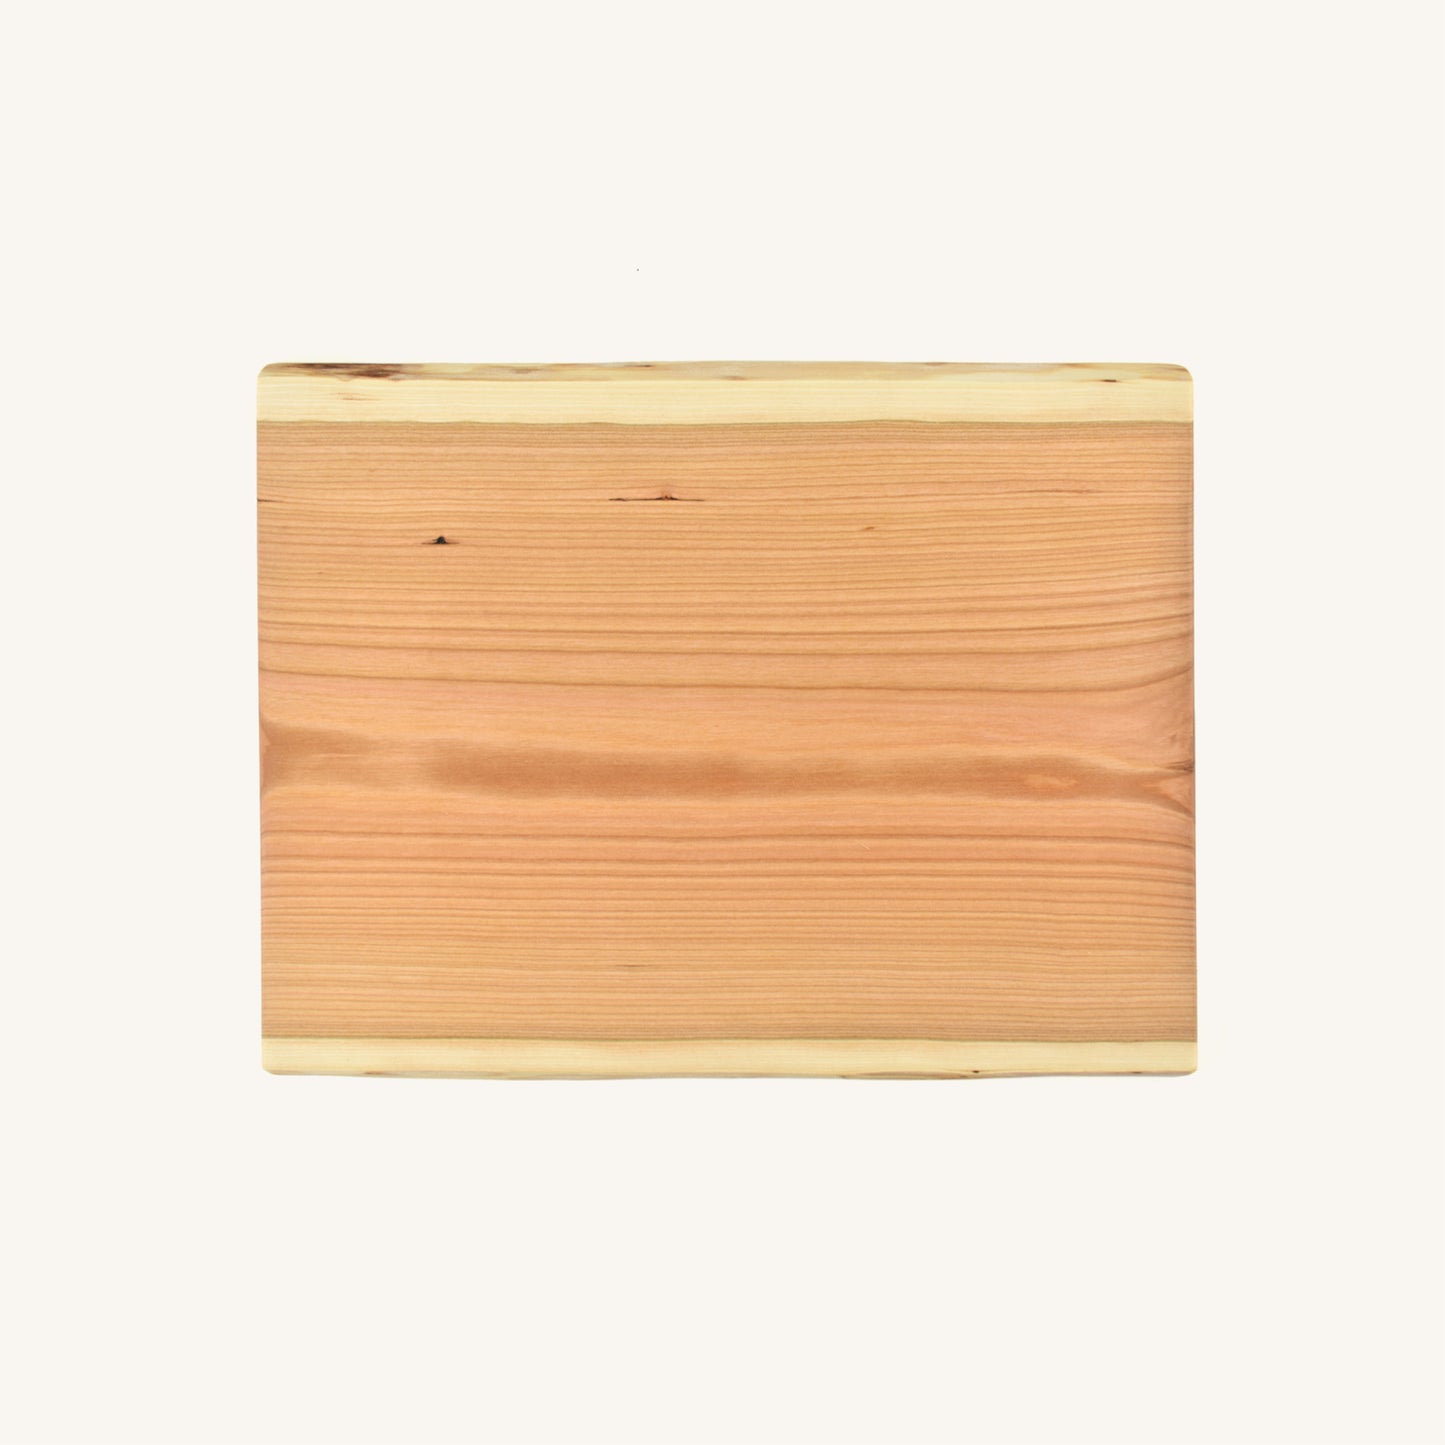 Petite planche de service rectangulaire en bois Live Edge